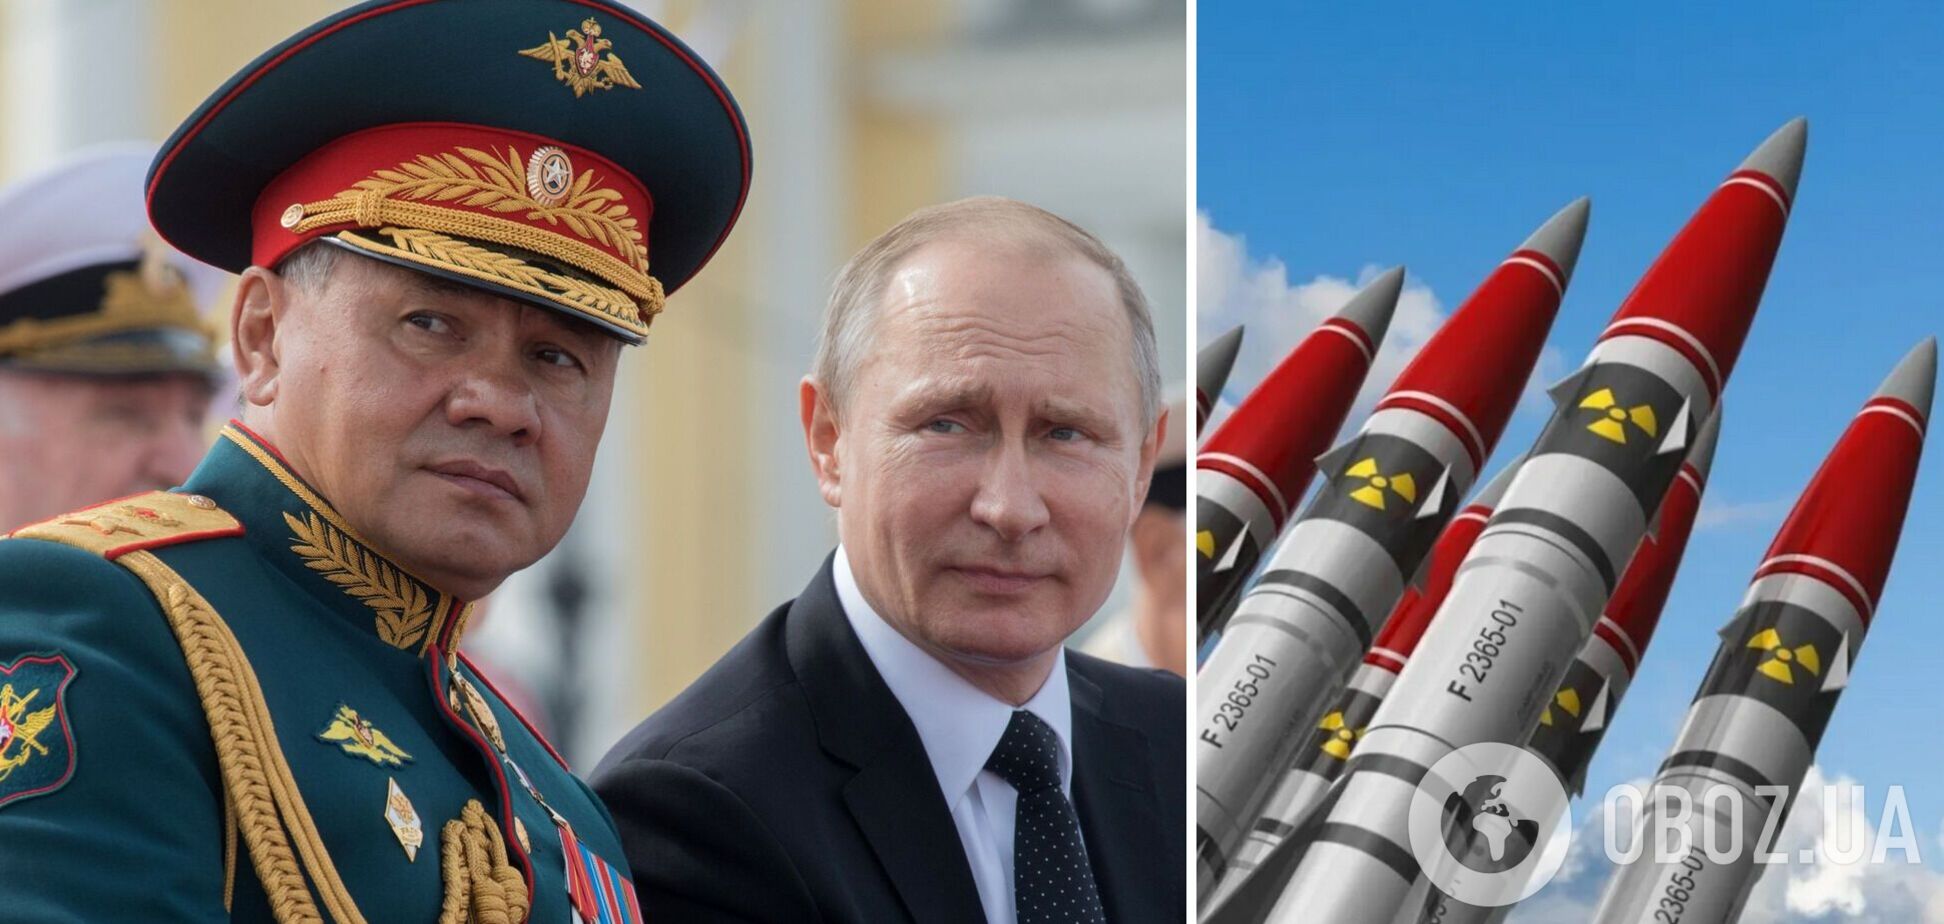 РФ закрыла свои ядерные объекты для инспекций США, предусмотренных Договором о сокращении стратегического ядерного вооружения